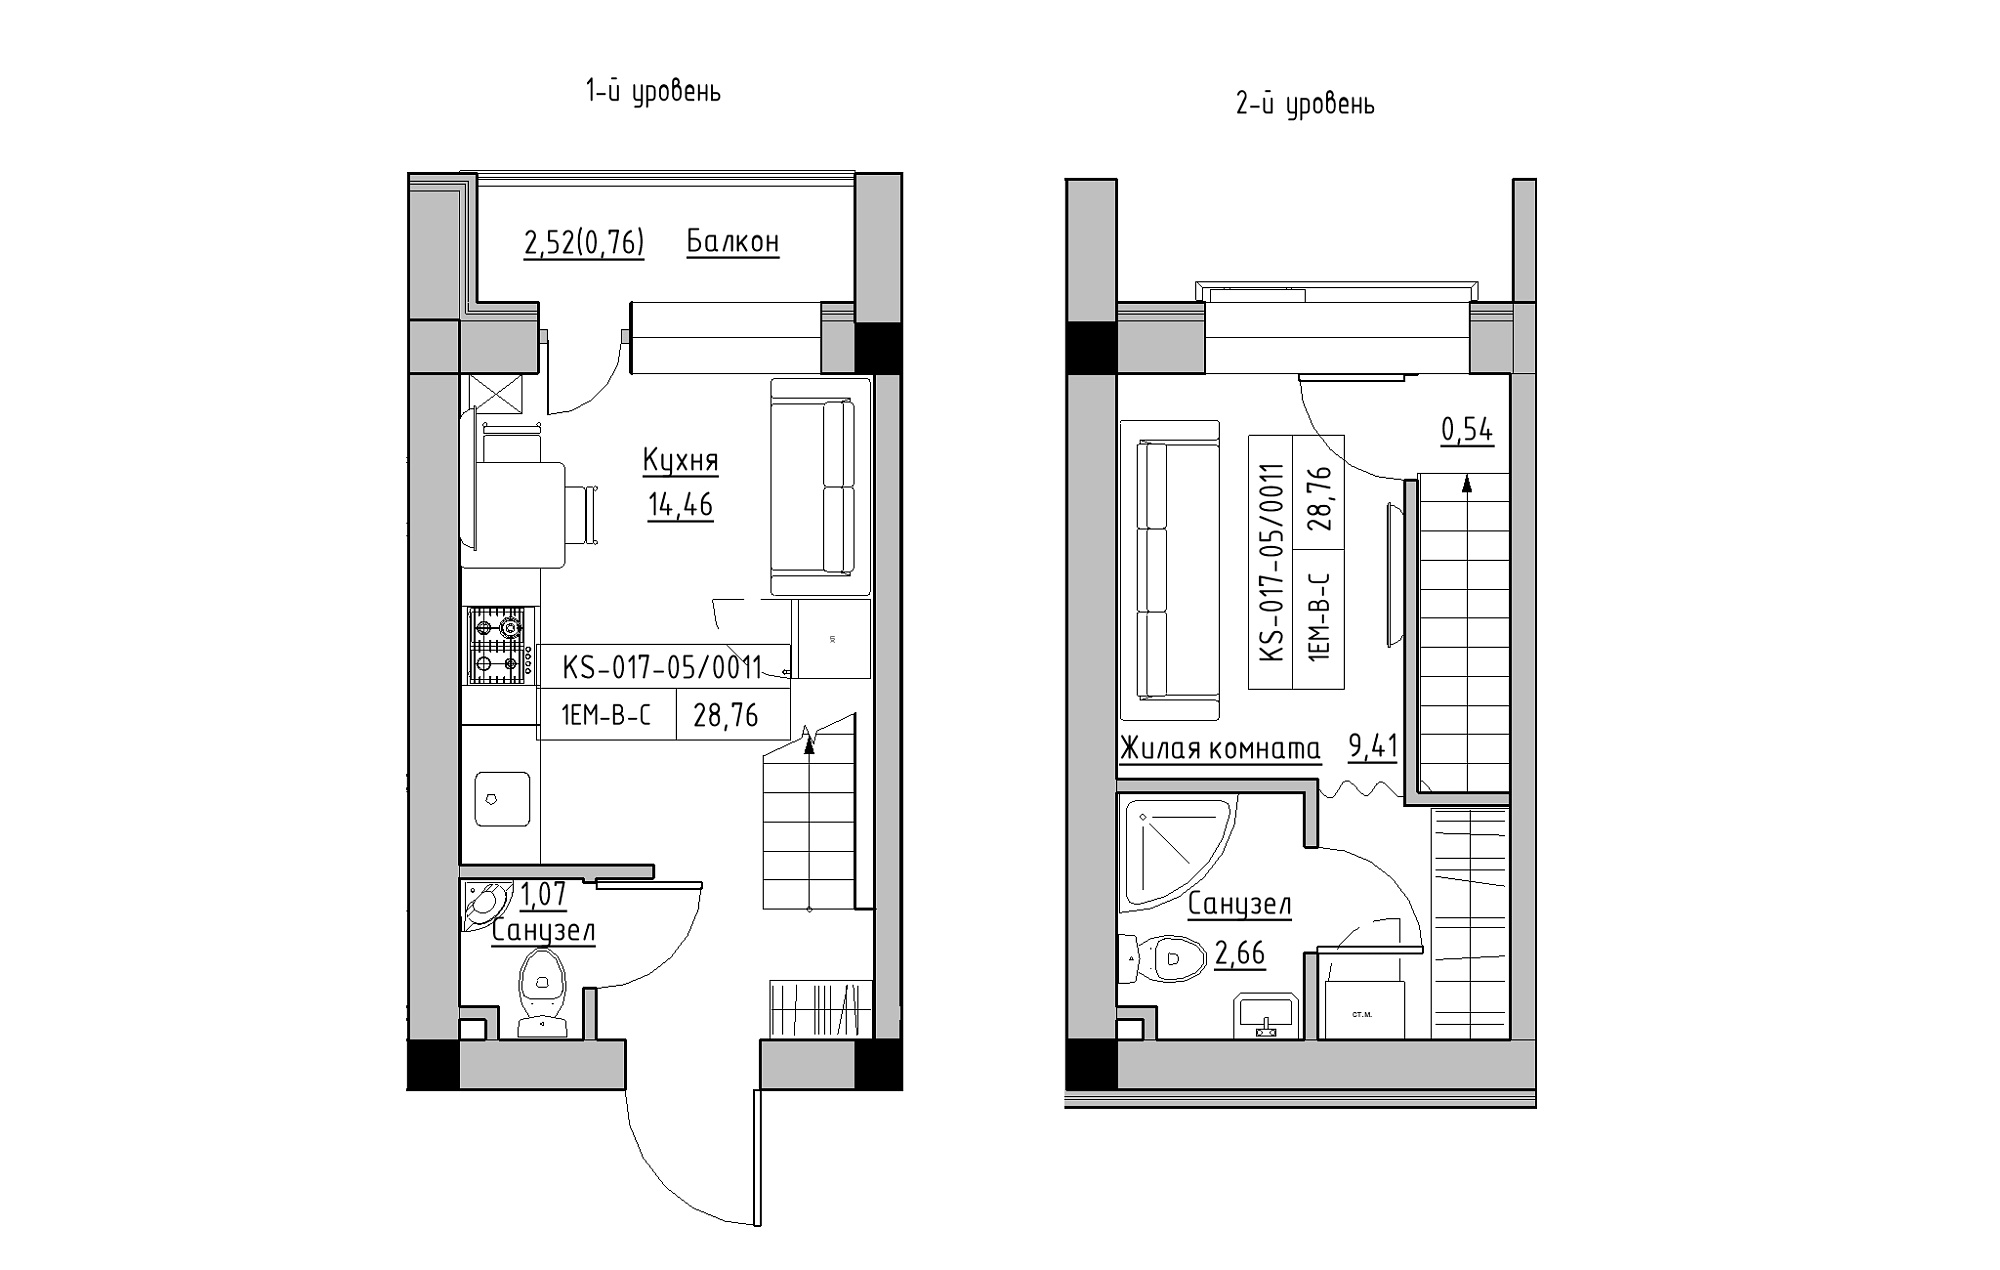 Planning 2-lvl flats area 28.76m2, KS-017-05/0011.